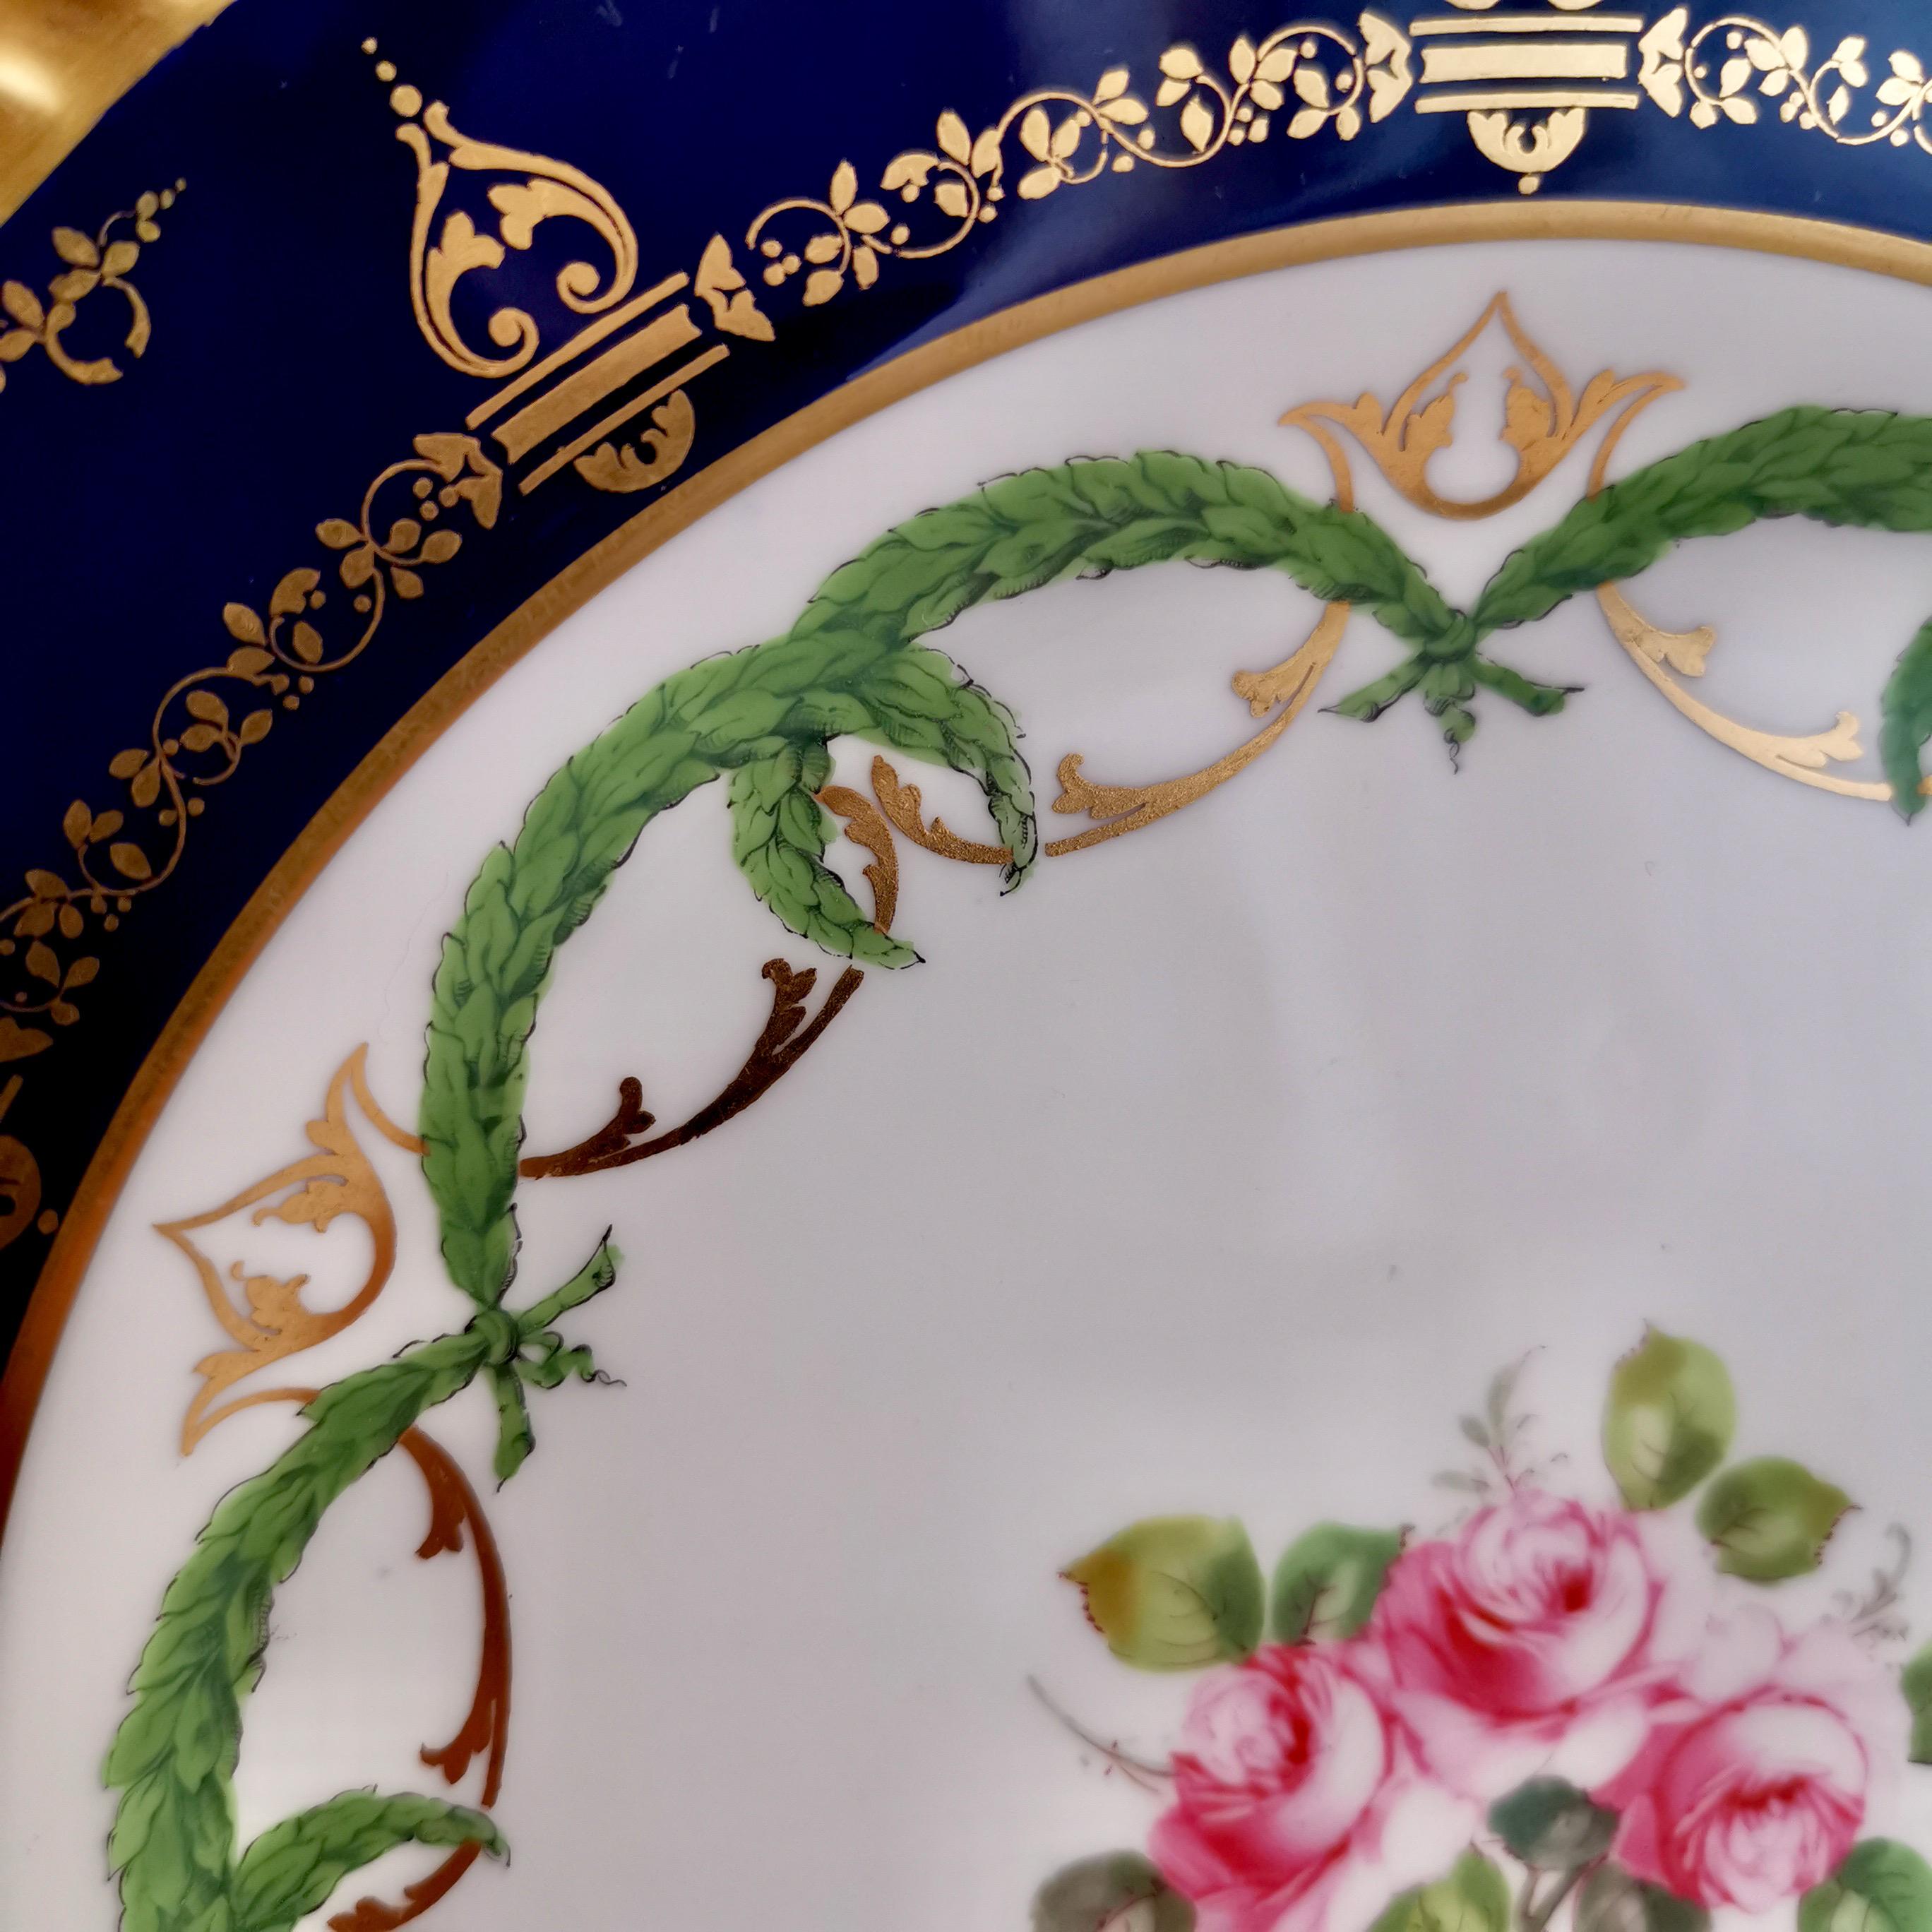 Royal Crown Derby Porcelain Plate, Cobalt Blue, Gilt and Billingsley Roses, 1907 3